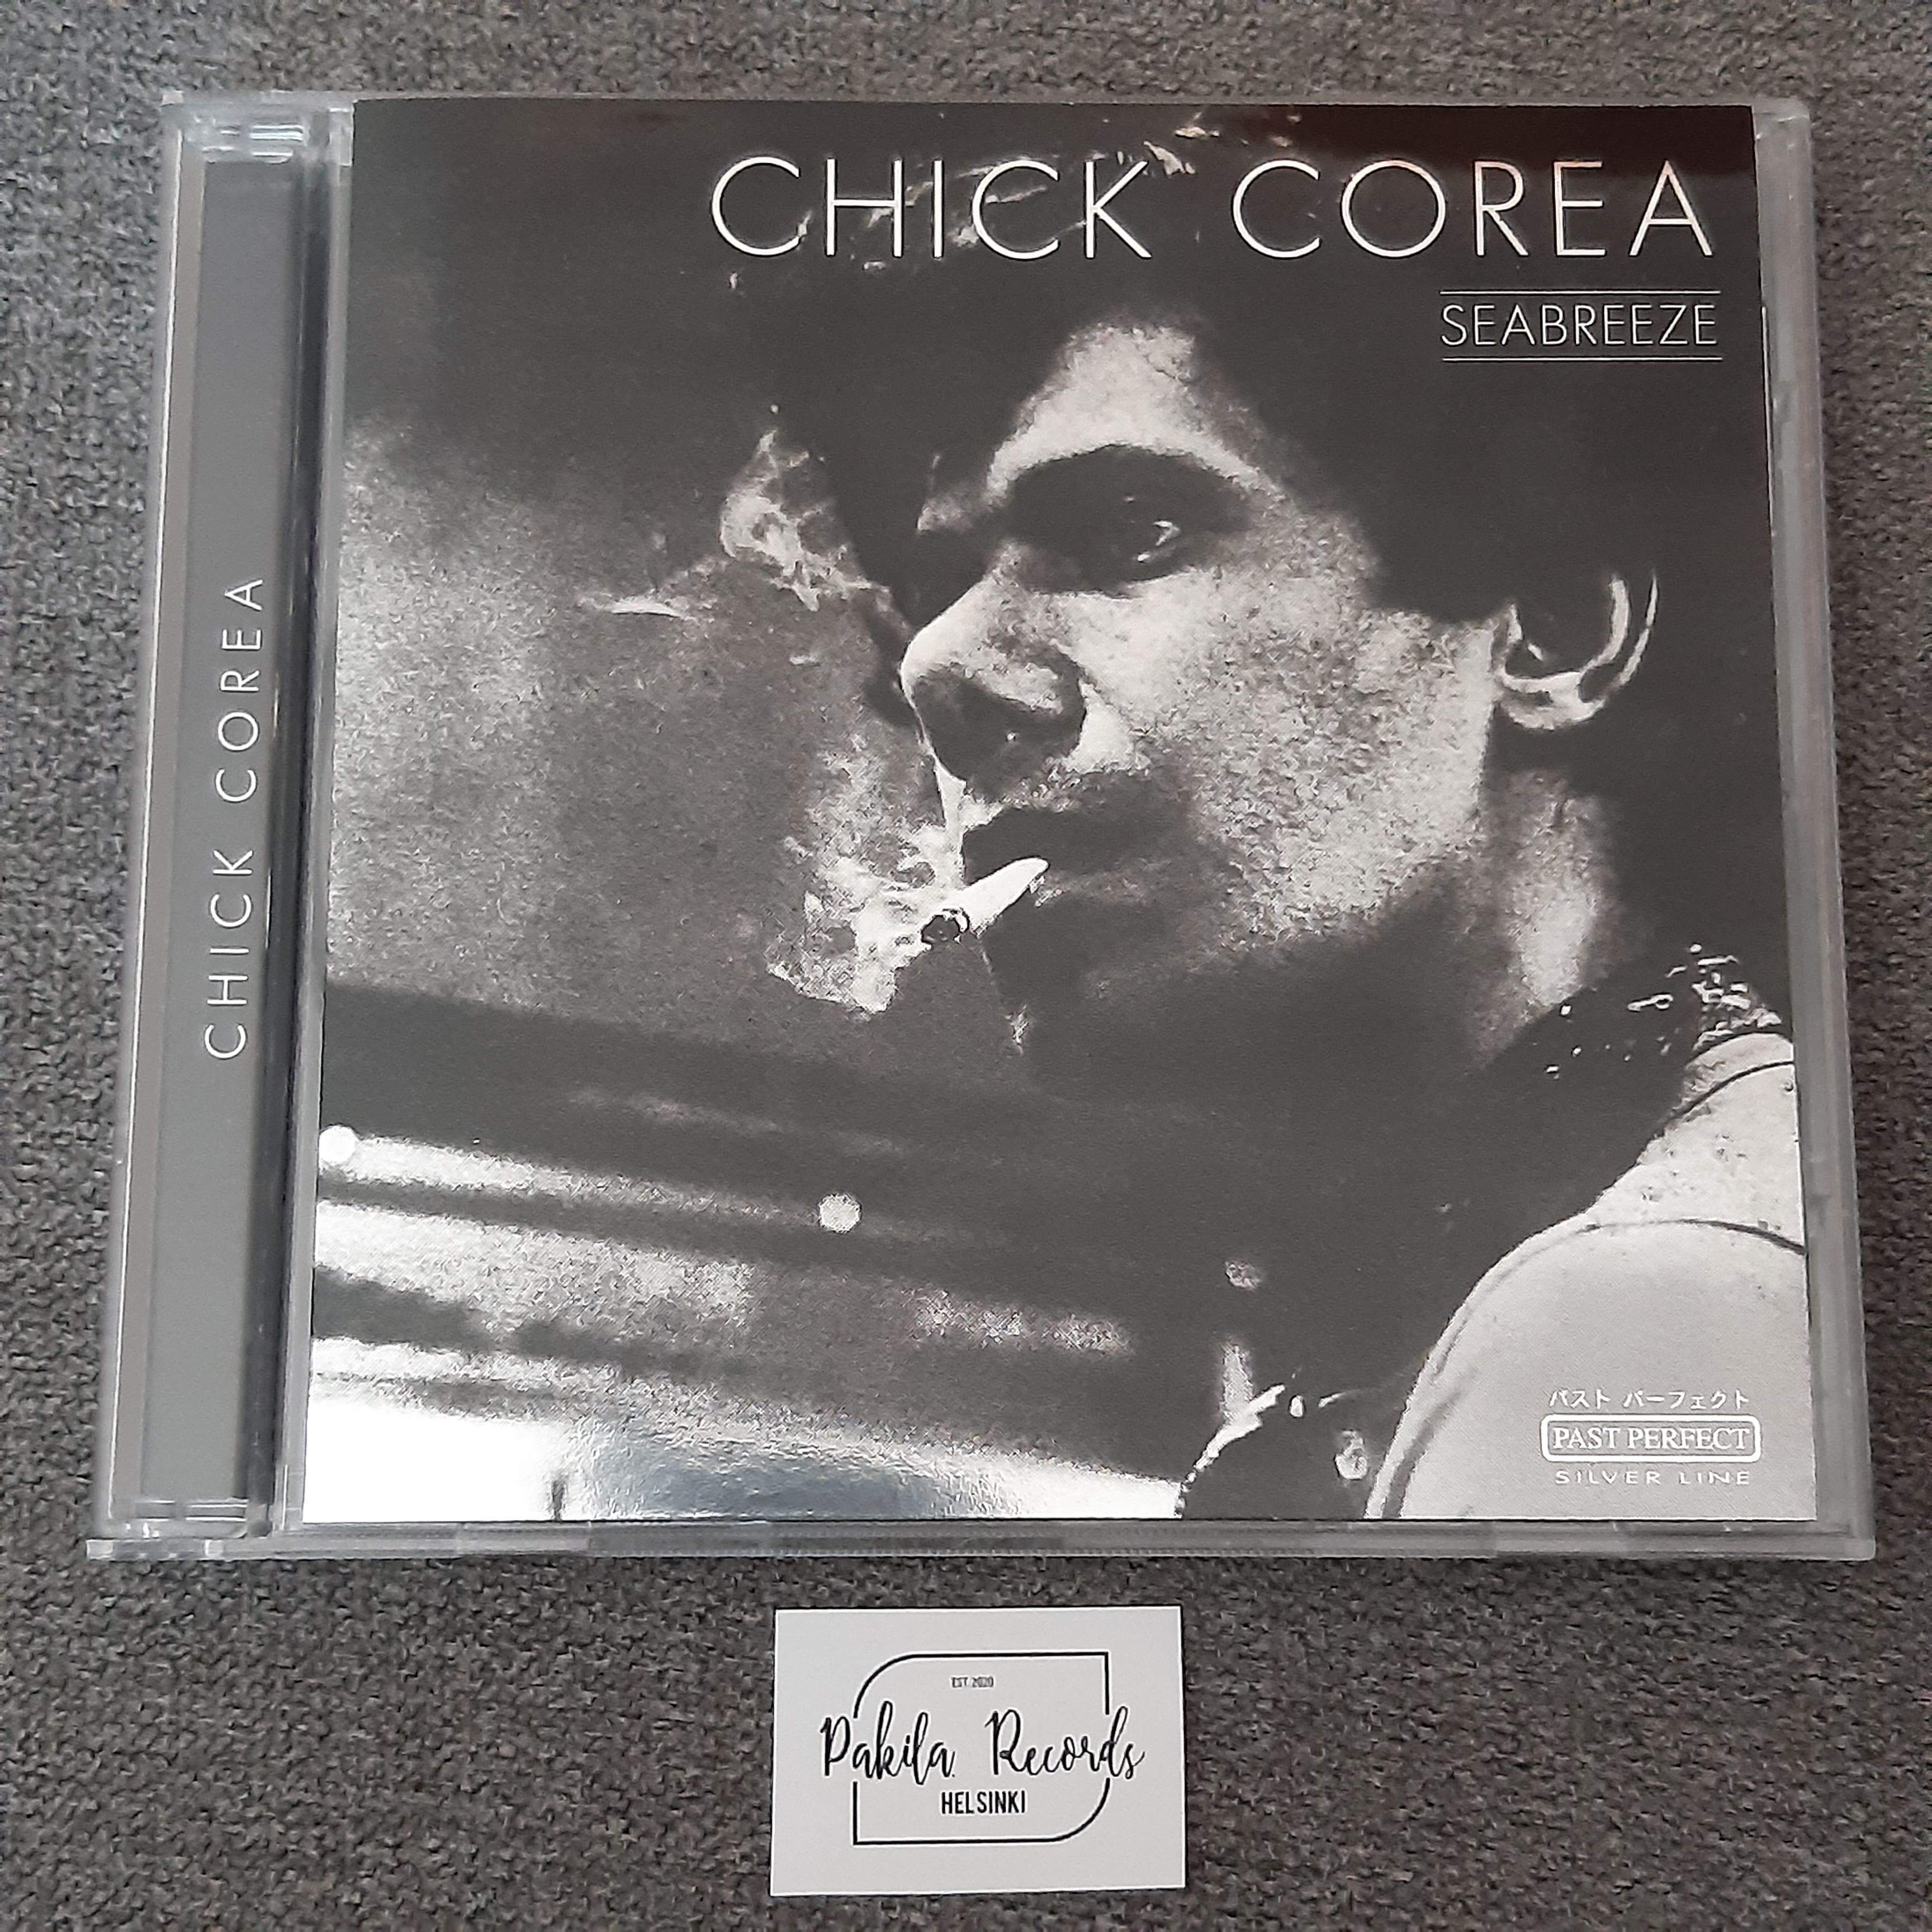 Chick Corea - Seabreeze - CD (käytetty)